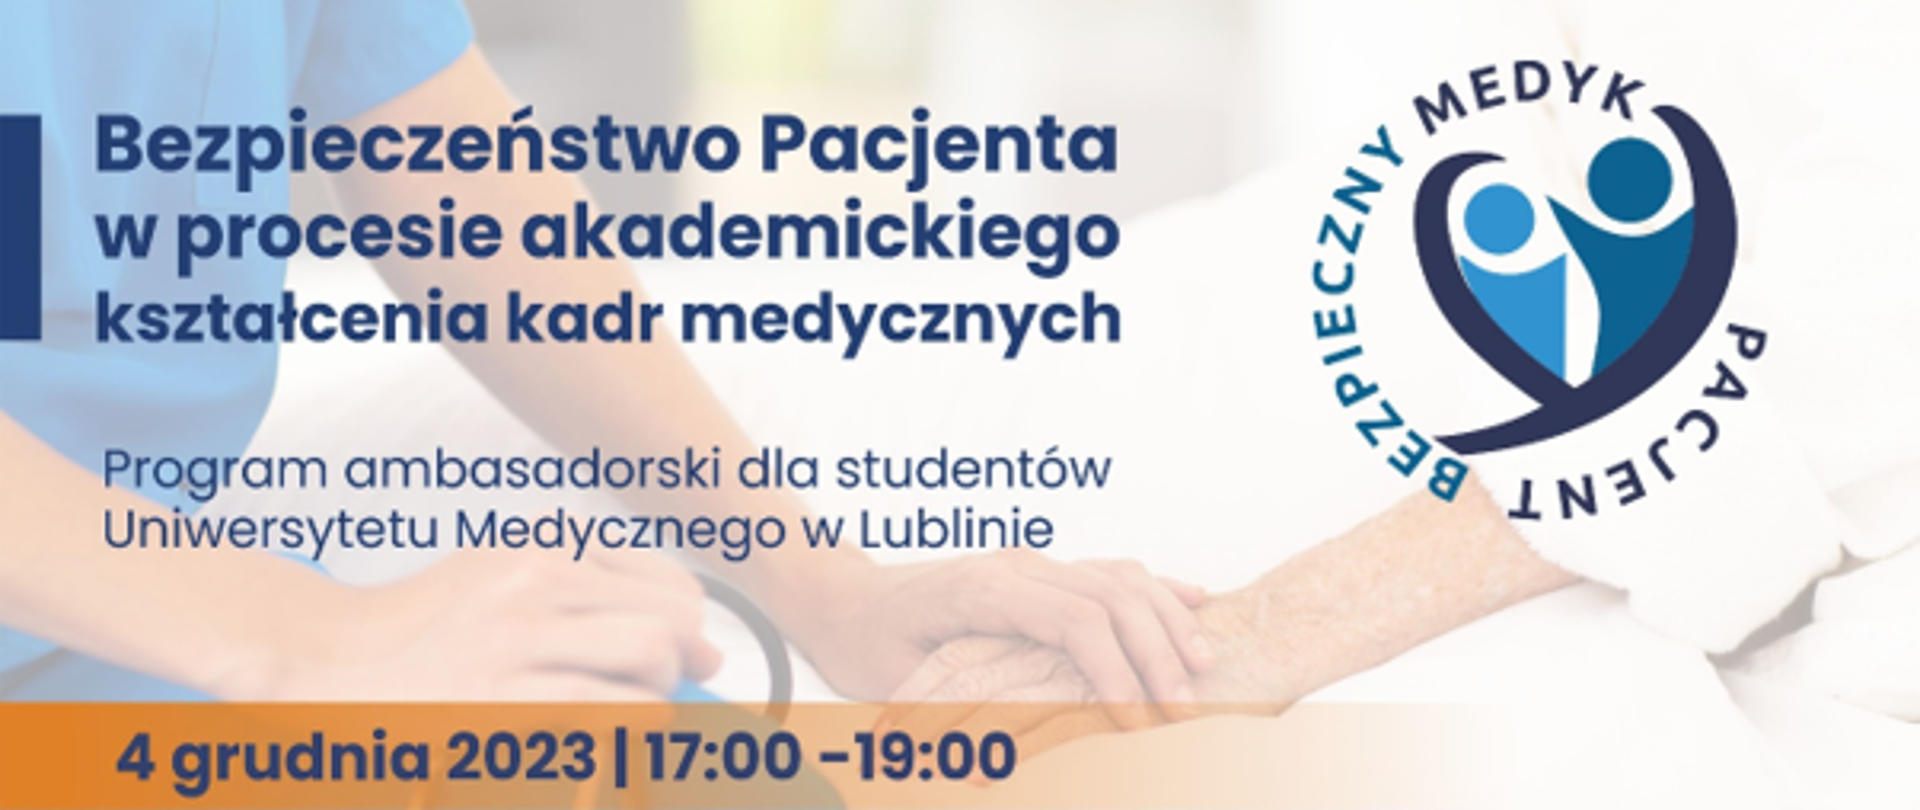 Program ambasadorski dla studentów UM - Uniwersytet Medyczny w Lublinie 